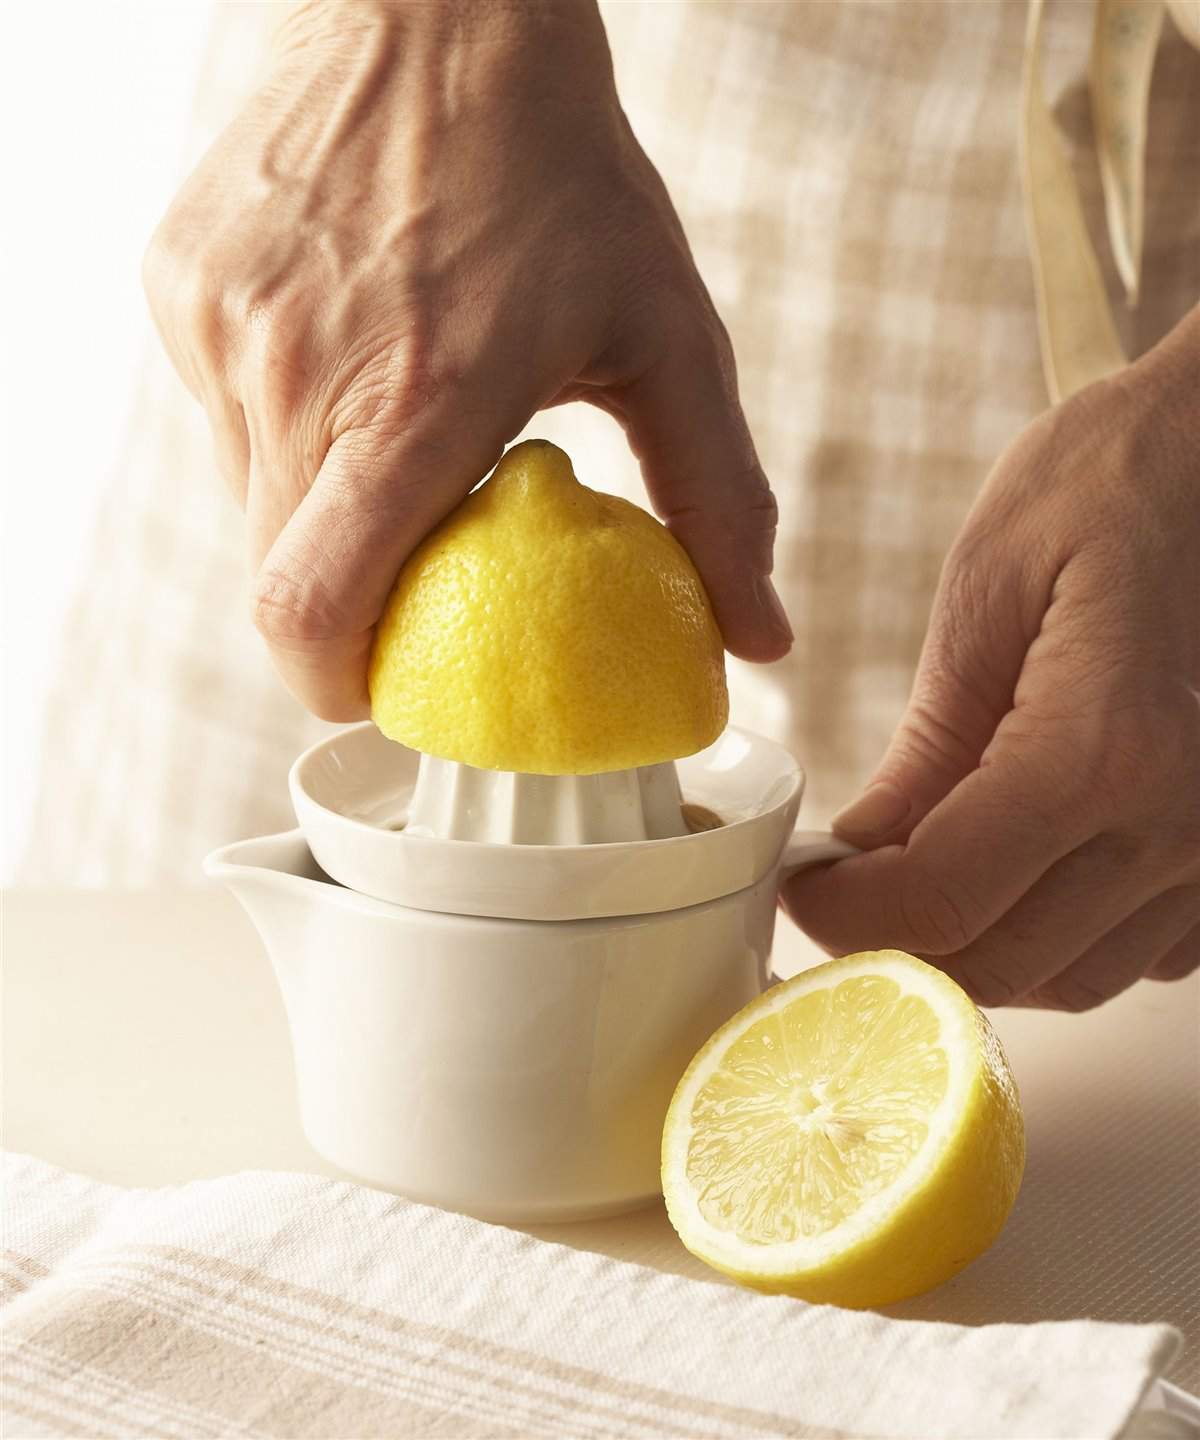 3. Exprime el limón